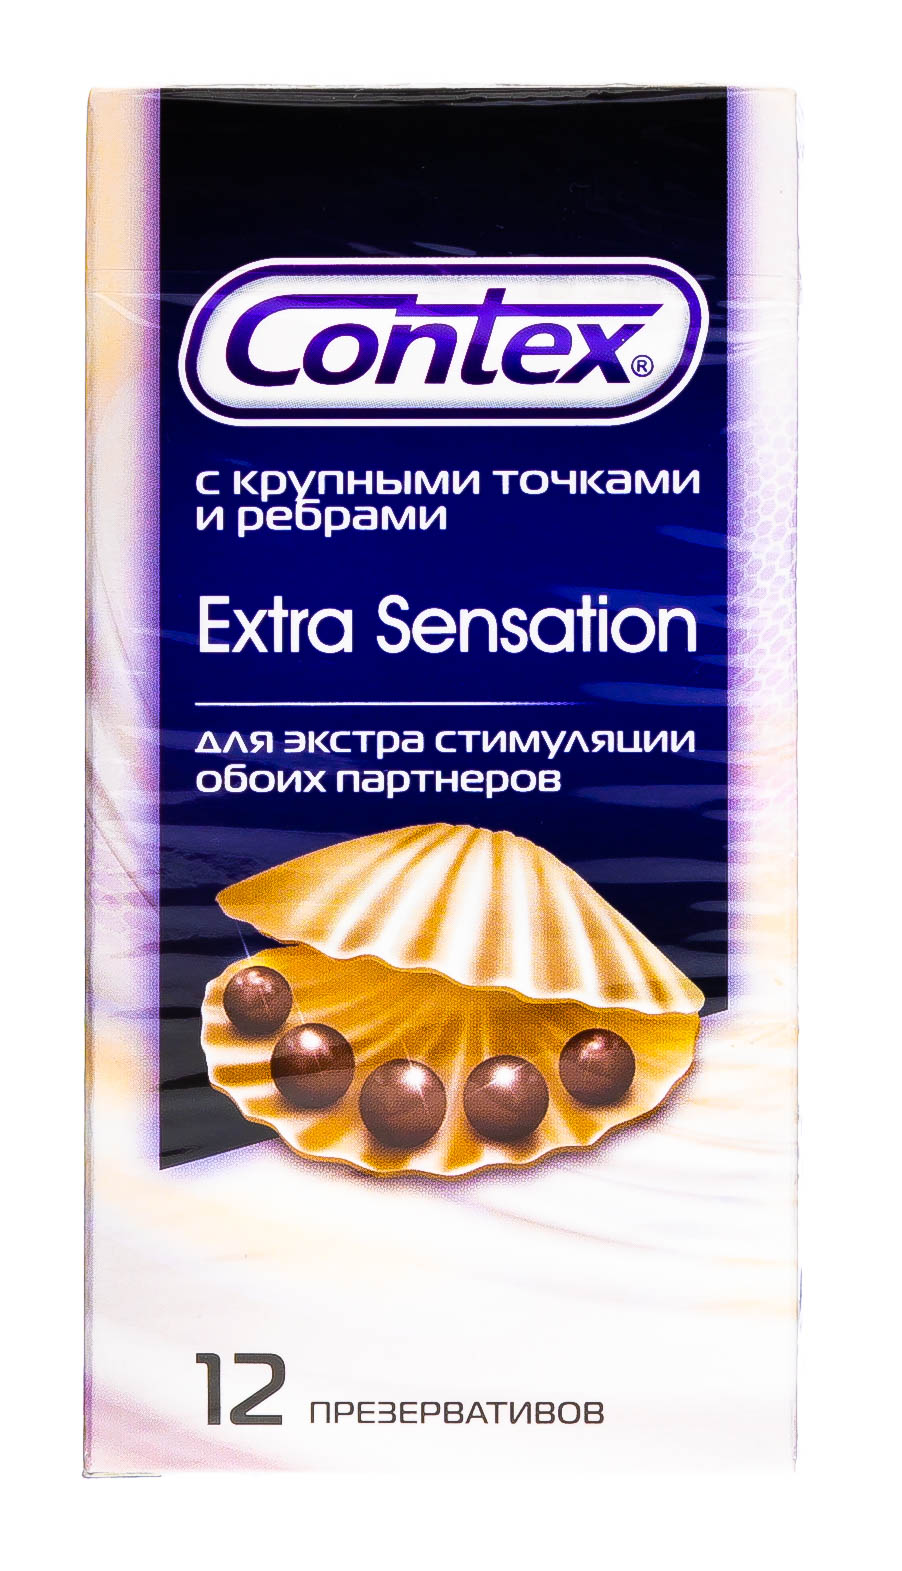 Contex Презервативы Extra Sensation с крупными точками и ребрами, 18 шт (Contex, Презервативы) презервативы с точками 3шт